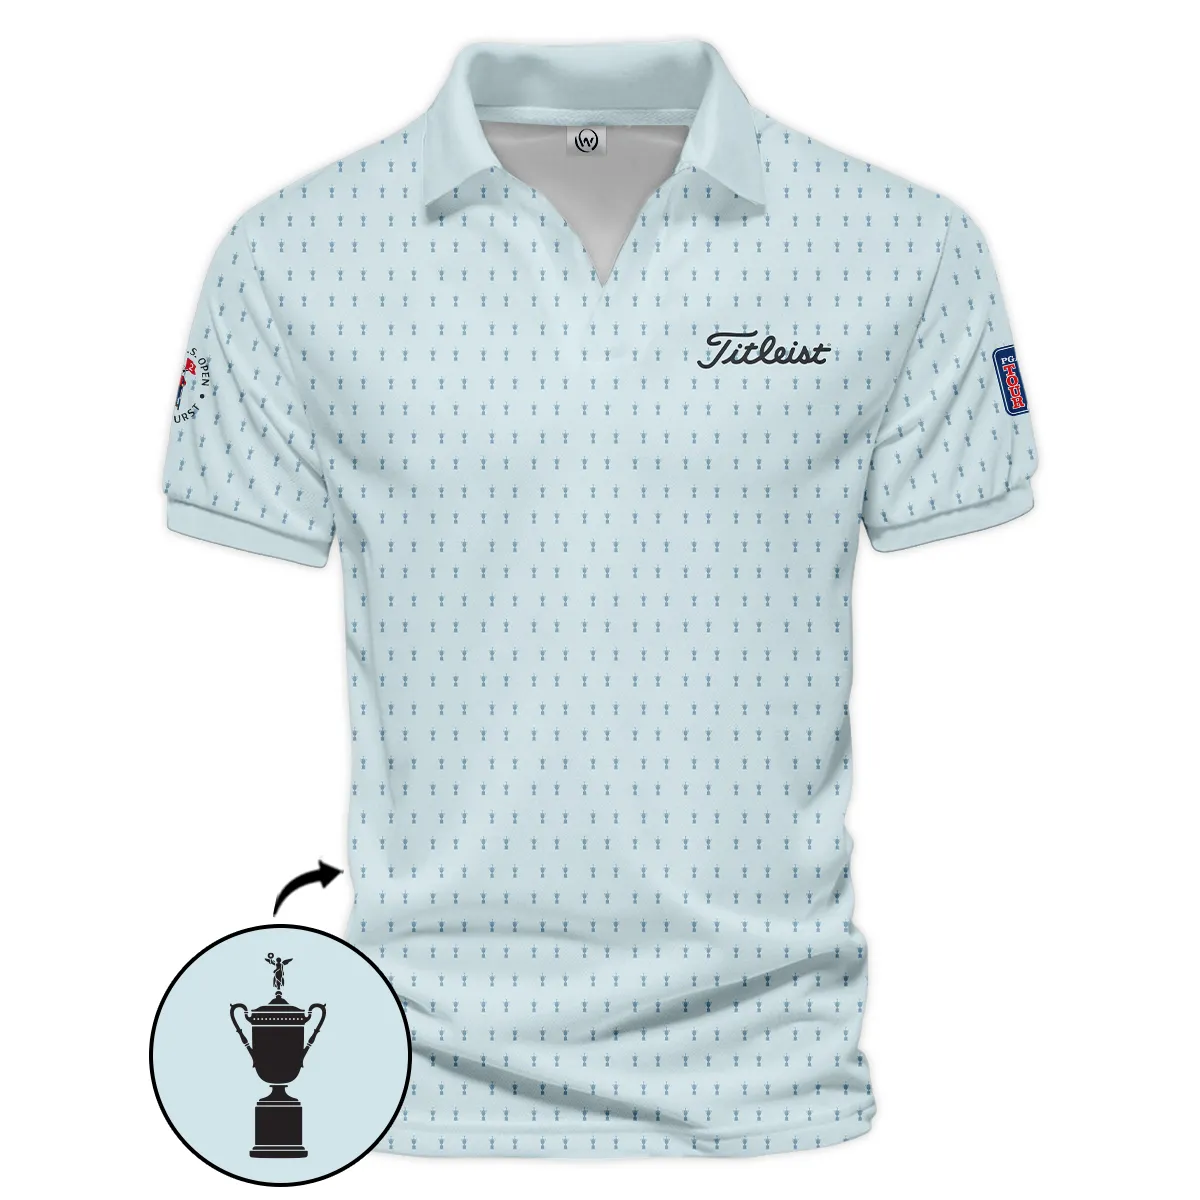 Golf Pattern Cup Light Blue Mix Green 124th U.S. Open Pinehurst Pinehurst Titleist Hoodie Shirt Style Classic